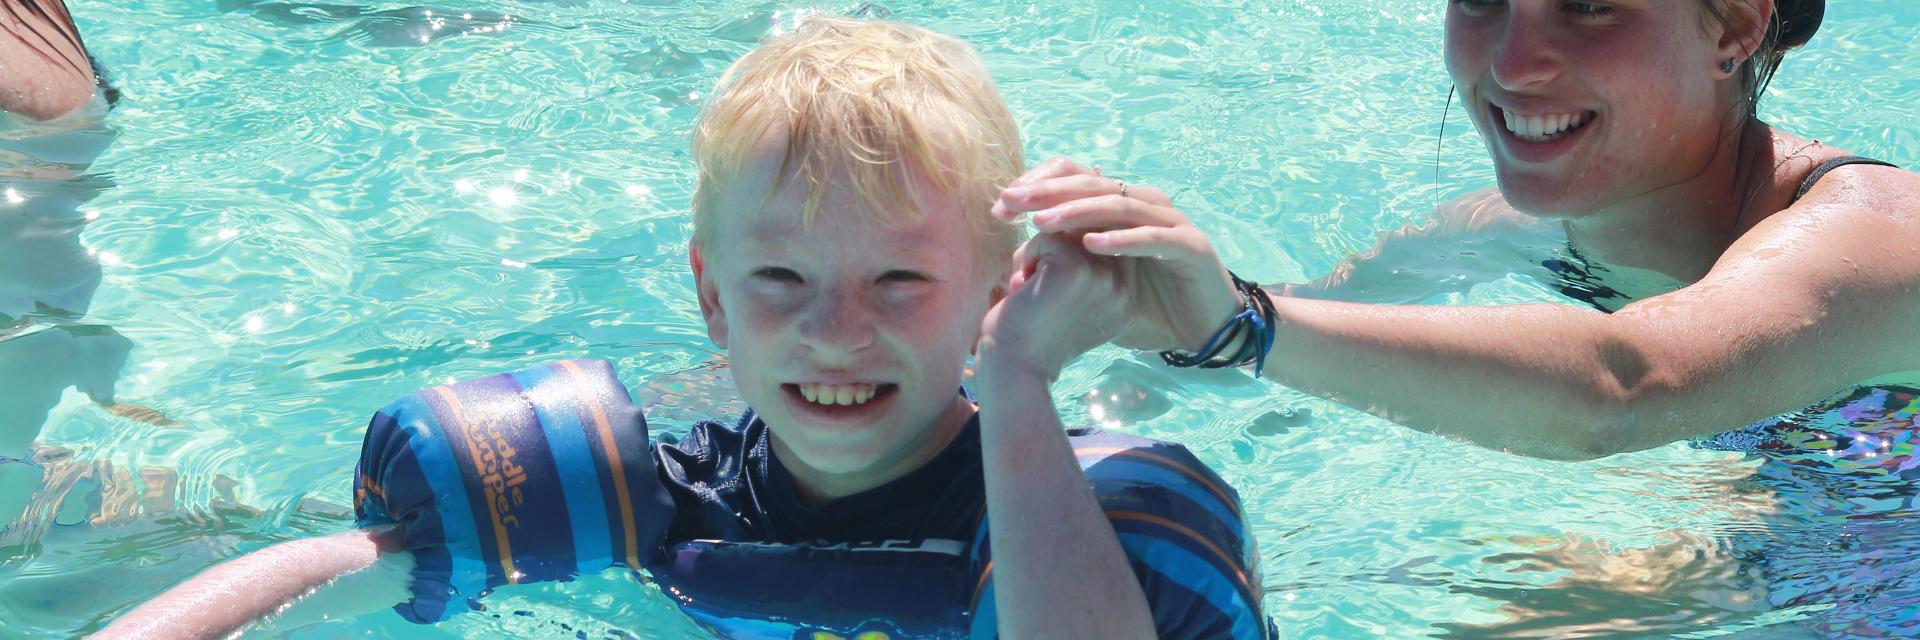 Boy smiling. enjoying the pool.